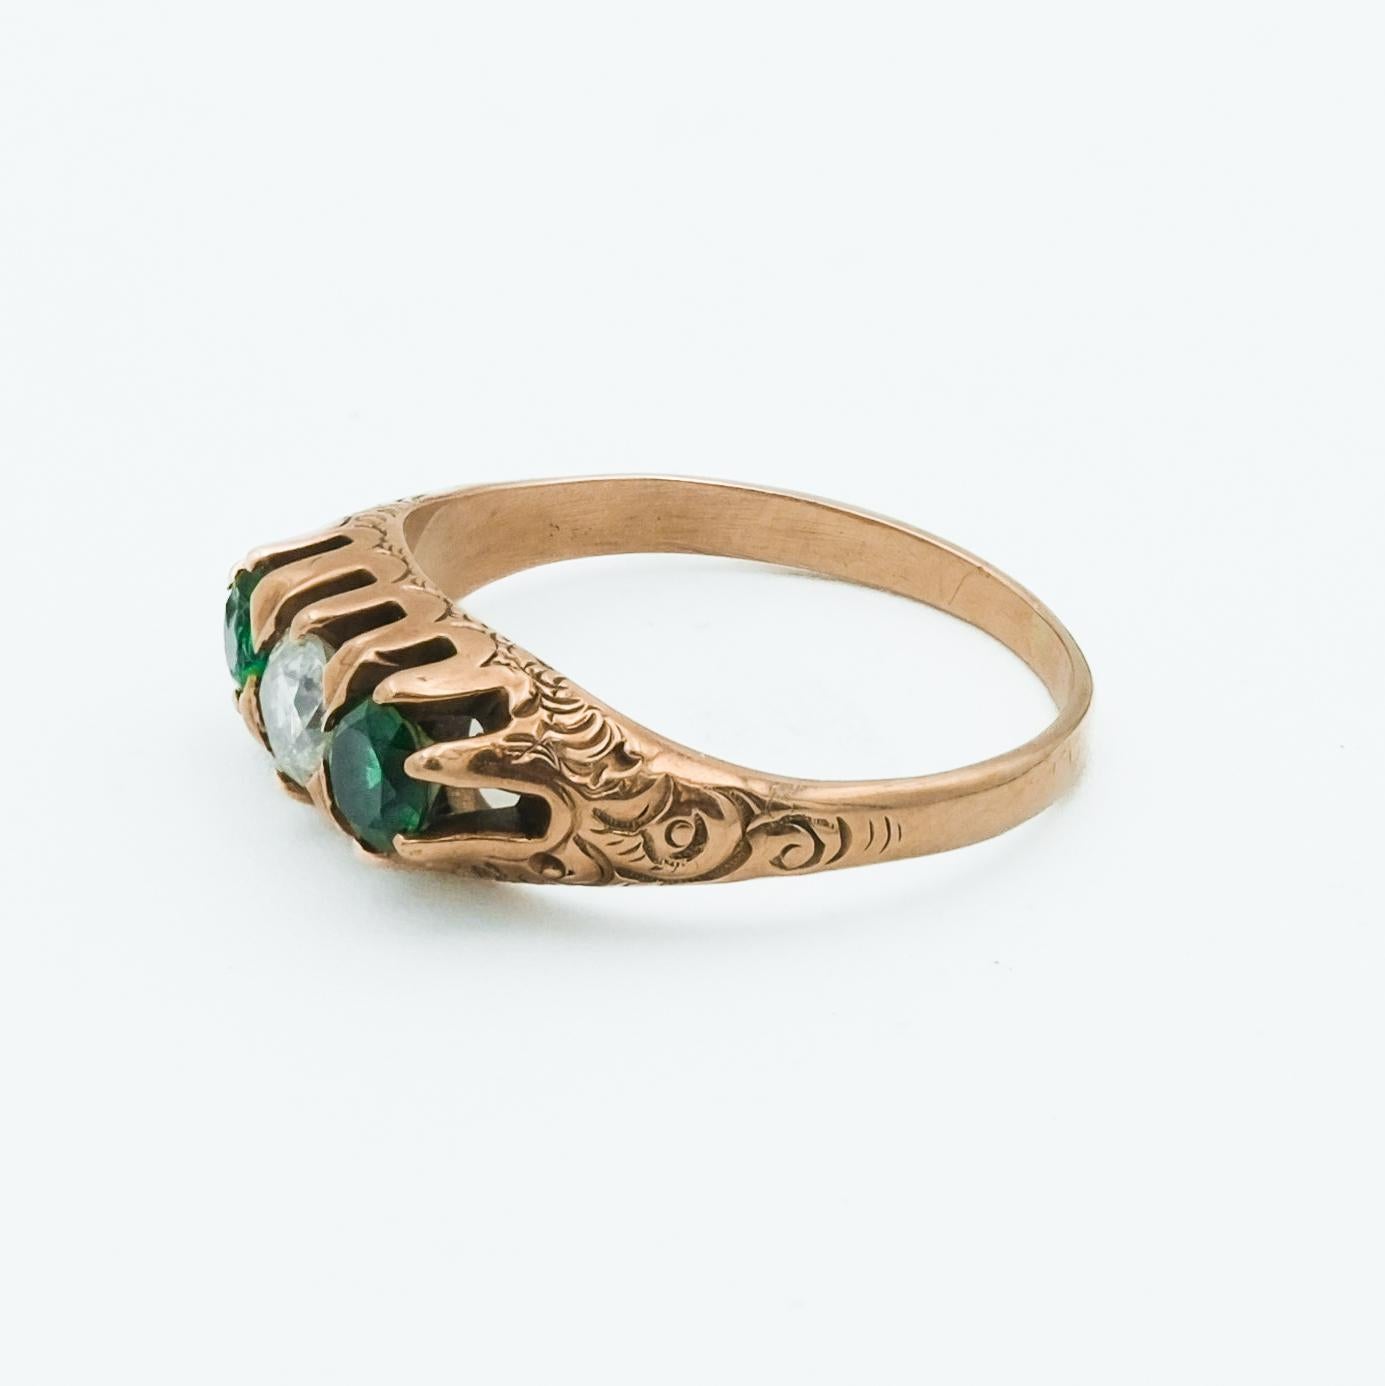 Dieser viktorianische Ring aus 10 Karat Roségold zeichnet sich durch ein zeitloses Drei-Steine-Design mit einem Diamanten in der Mitte zwischen zwei Smaragden aus, eine beliebte Konfiguration in der viktorianischen Ära. Der Smaragd, bekannt für